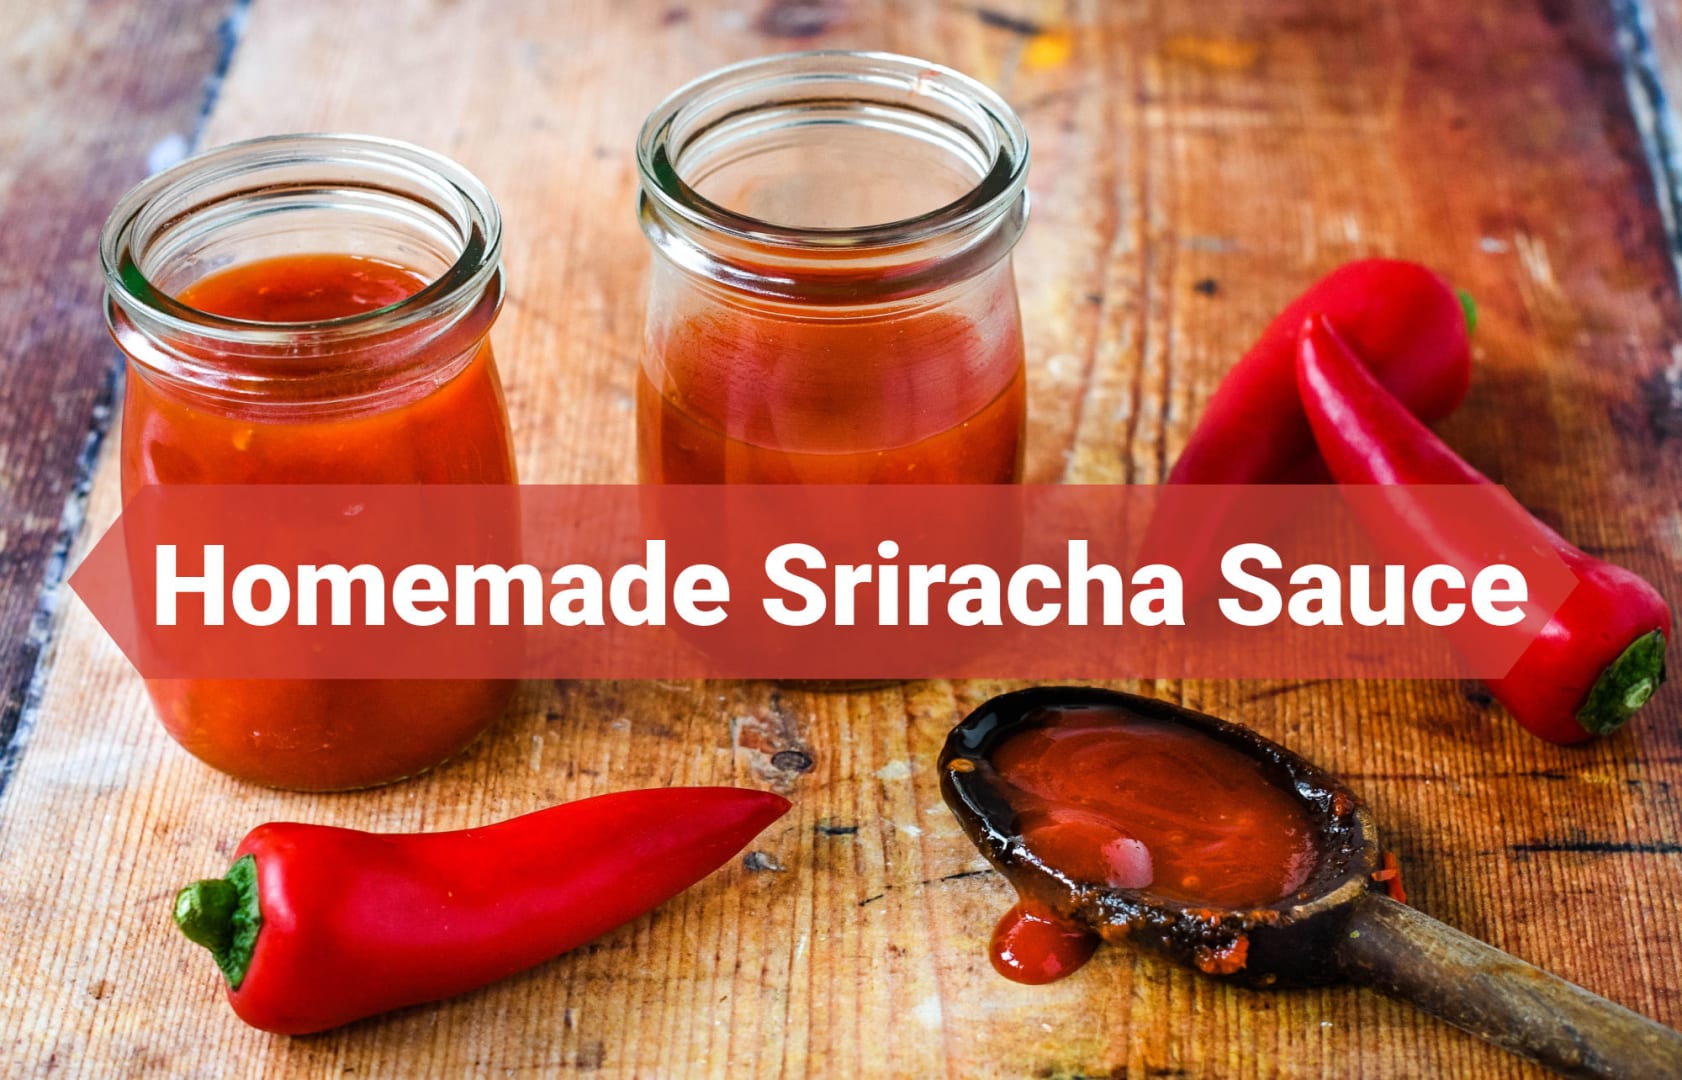 Best Homemade Sriracha Recipe - How To Make Homemade Sriracha